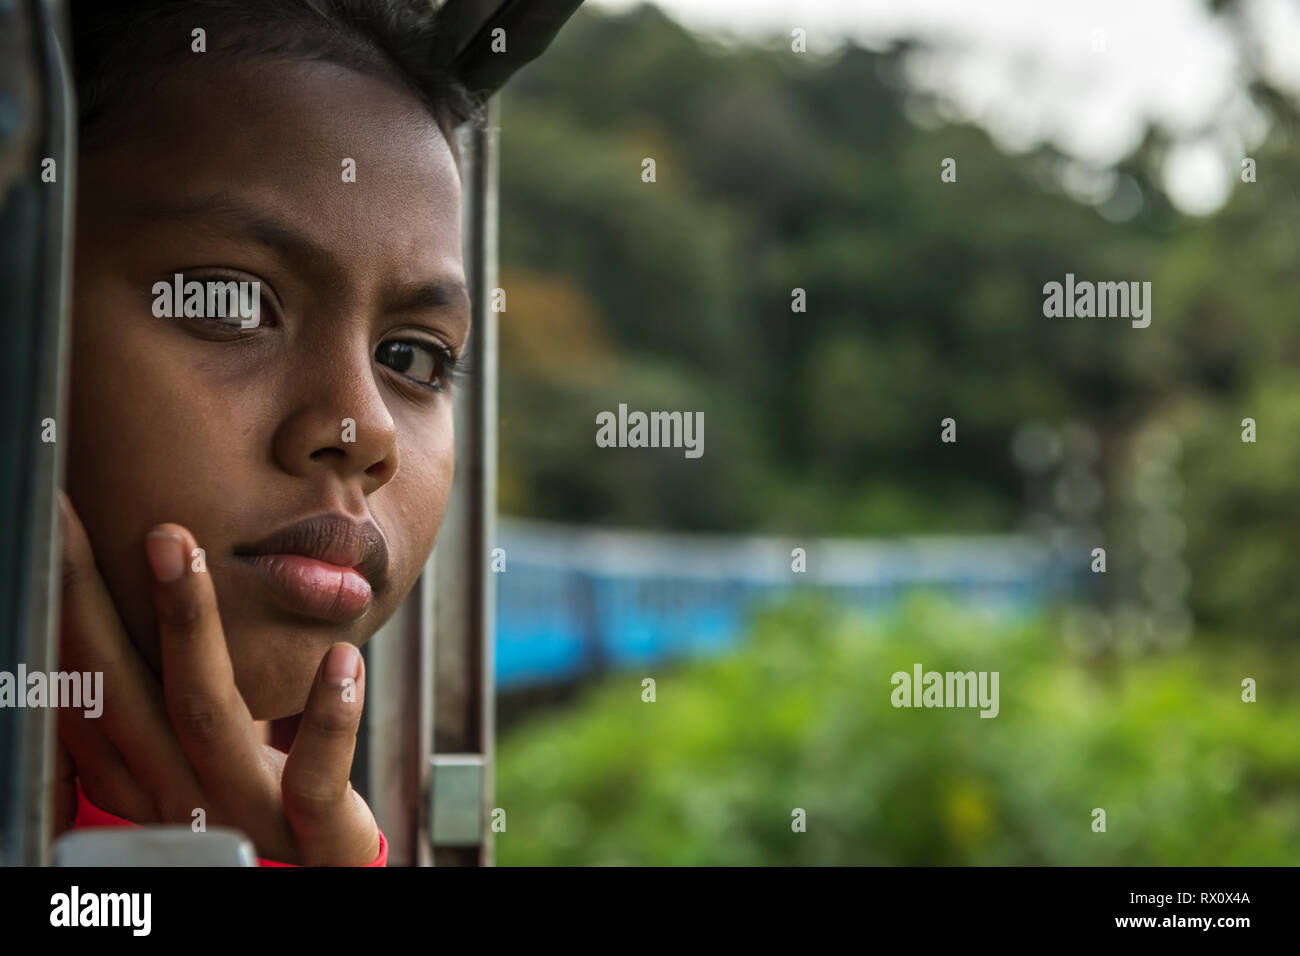 Jeune fille dans un train - un jour chaud en mars, une jeune fille bénéficie de la brise venant de la fenêtre ouverte sur le trajet en train de la gare de Nanu Oya à Ella en Sr Banque D'Images